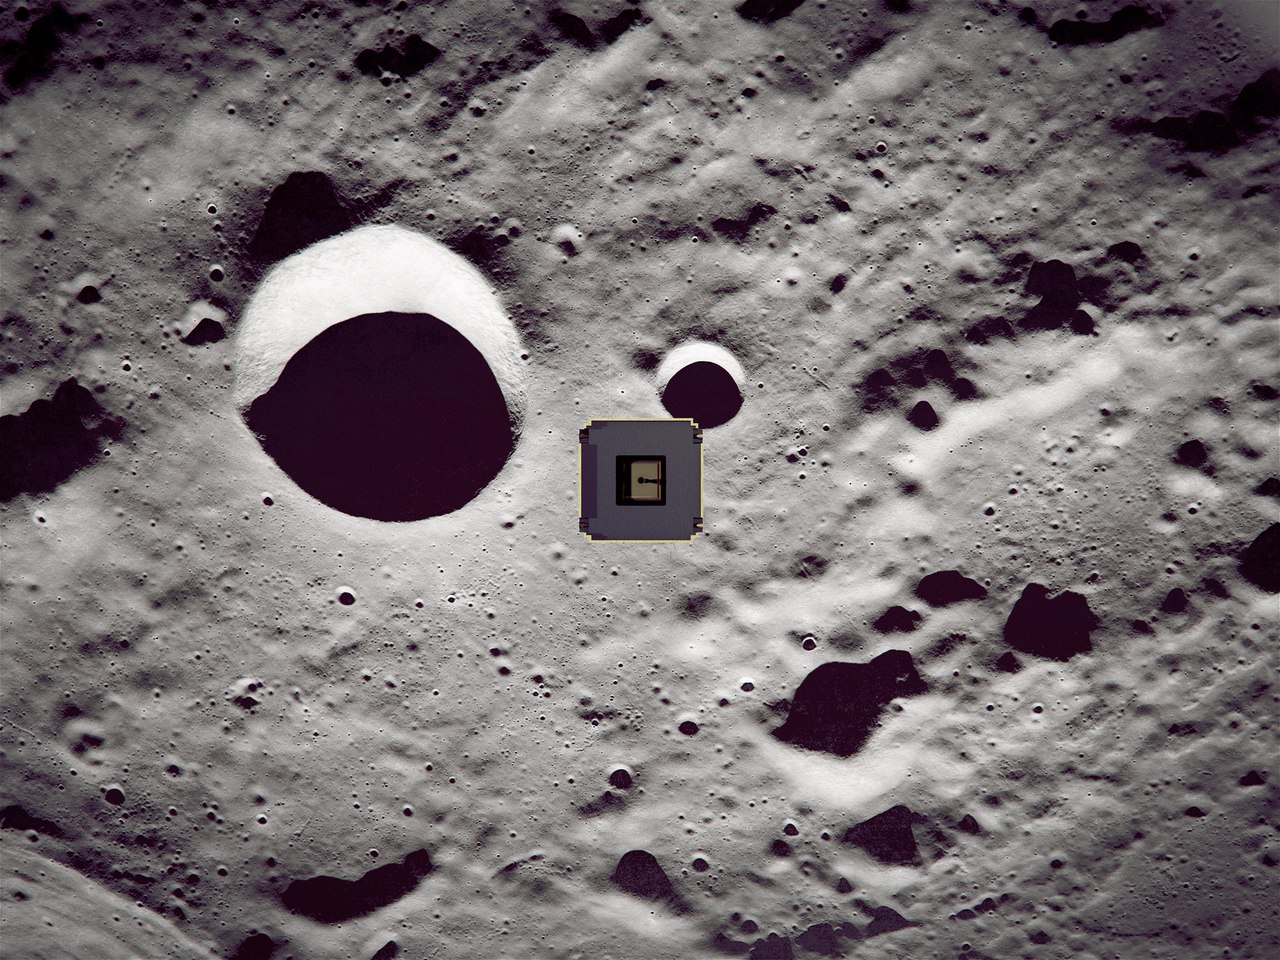 Проект лунного микроспутника: вопросы и ответы - 1